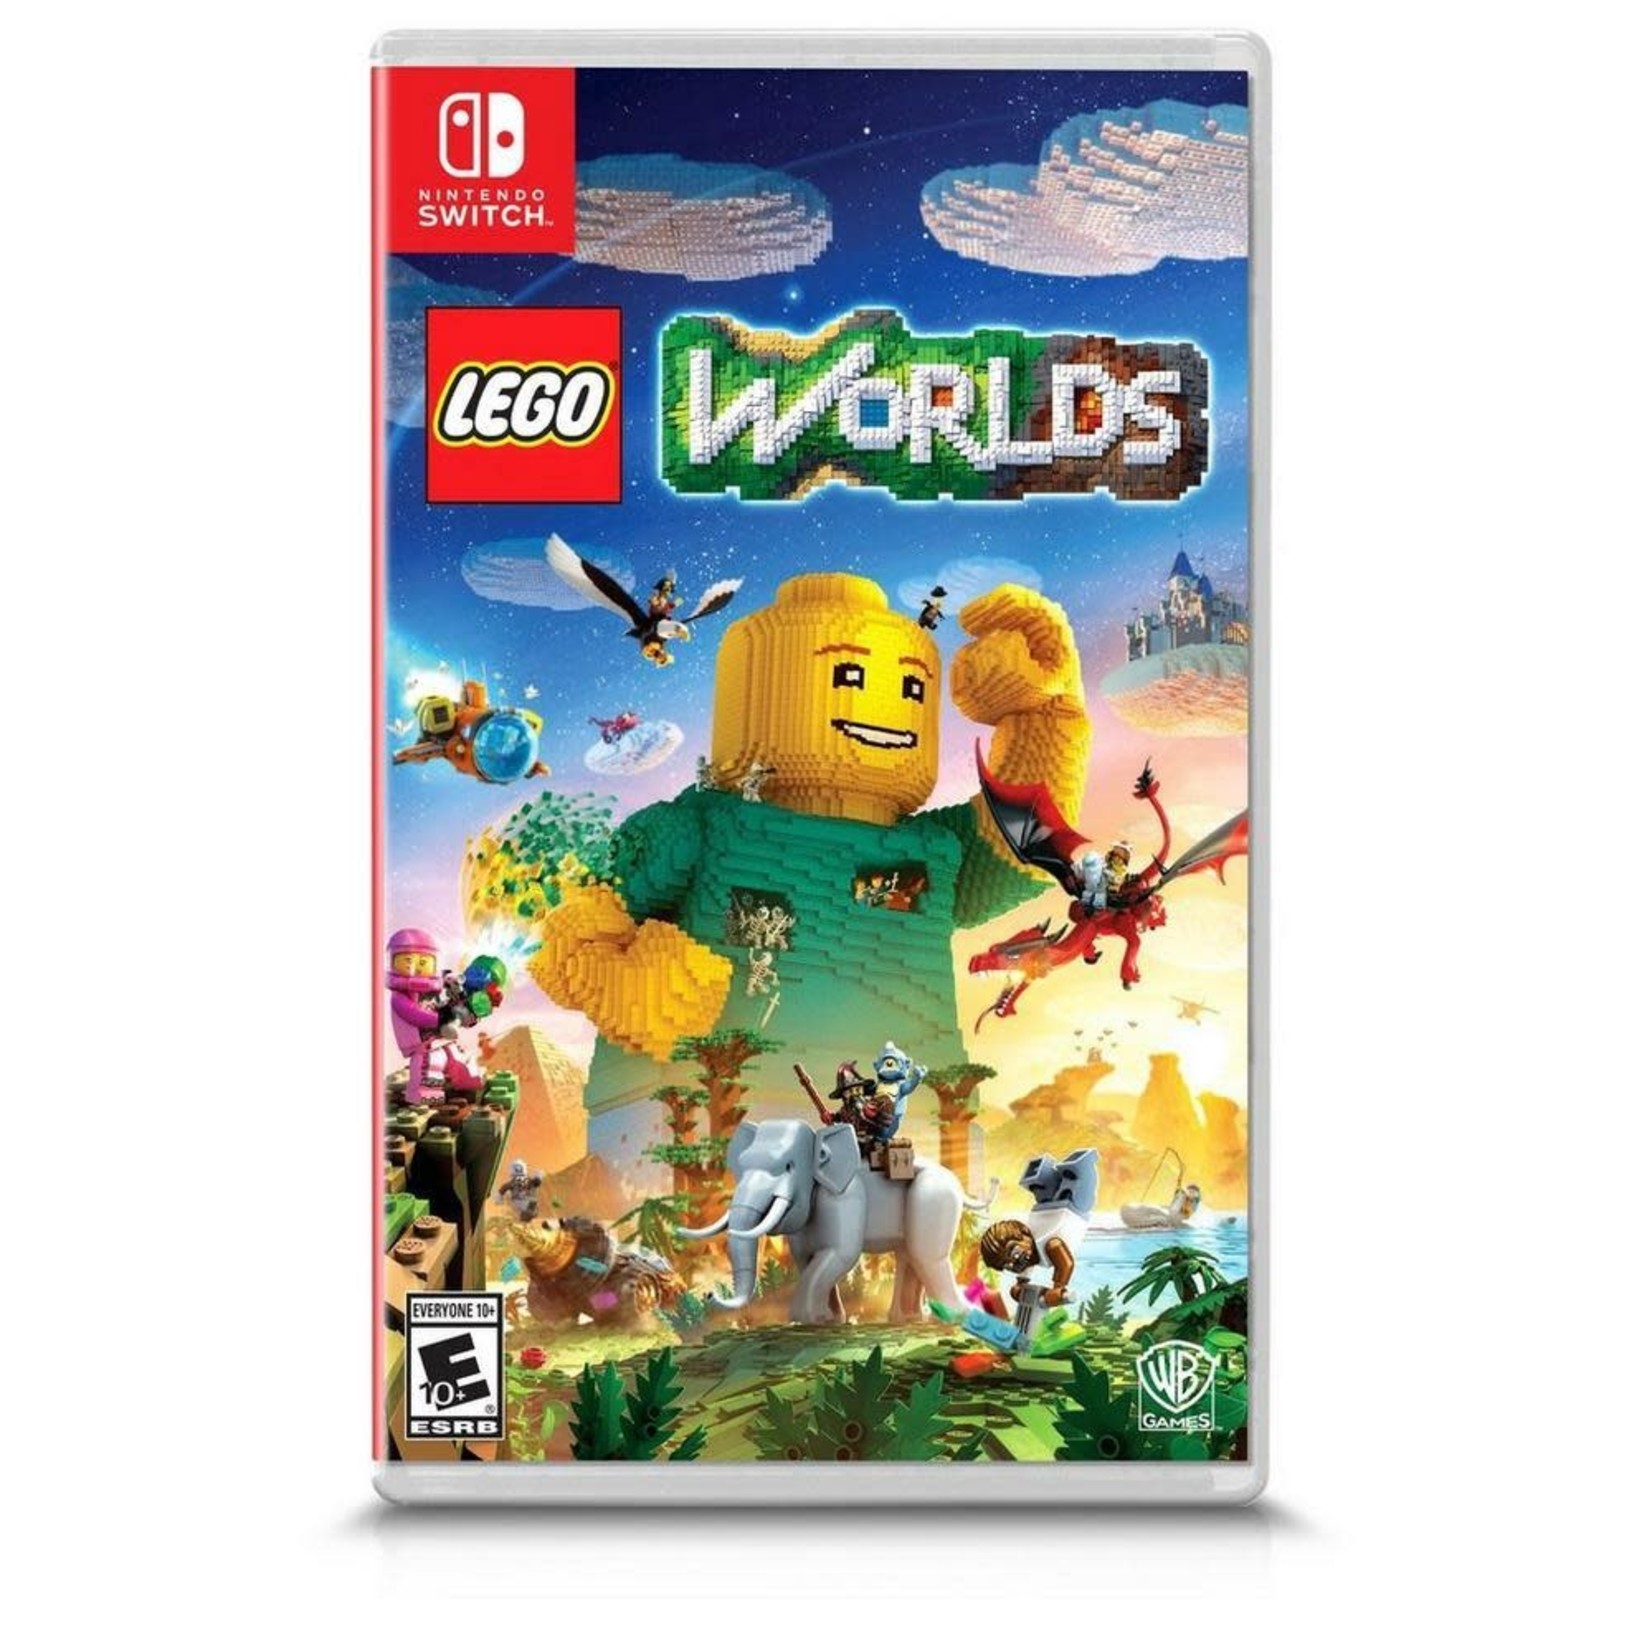 SWITCH-LEGO Worlds